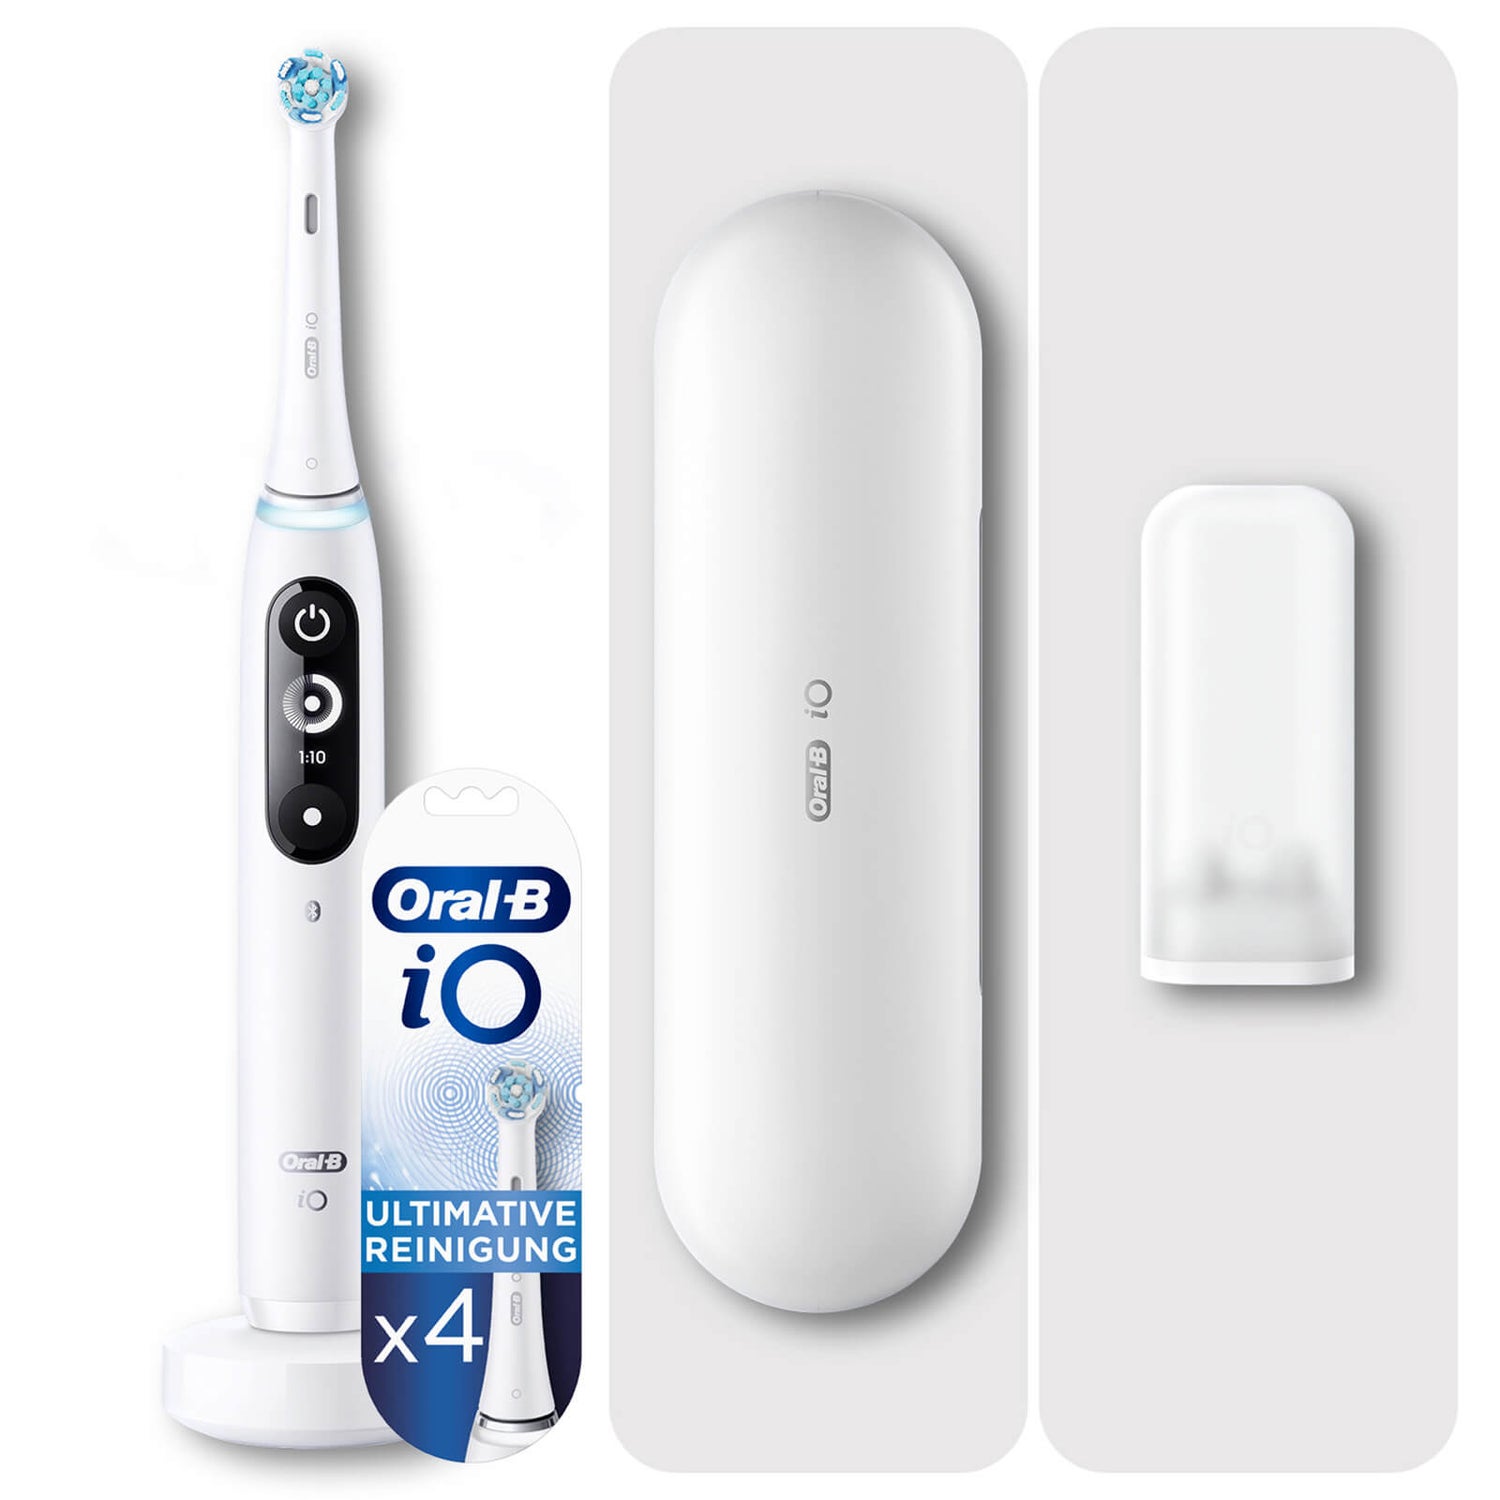 Oral-B iO 7 Elektrische Zahnbürste, Reiseetui, white alabaster